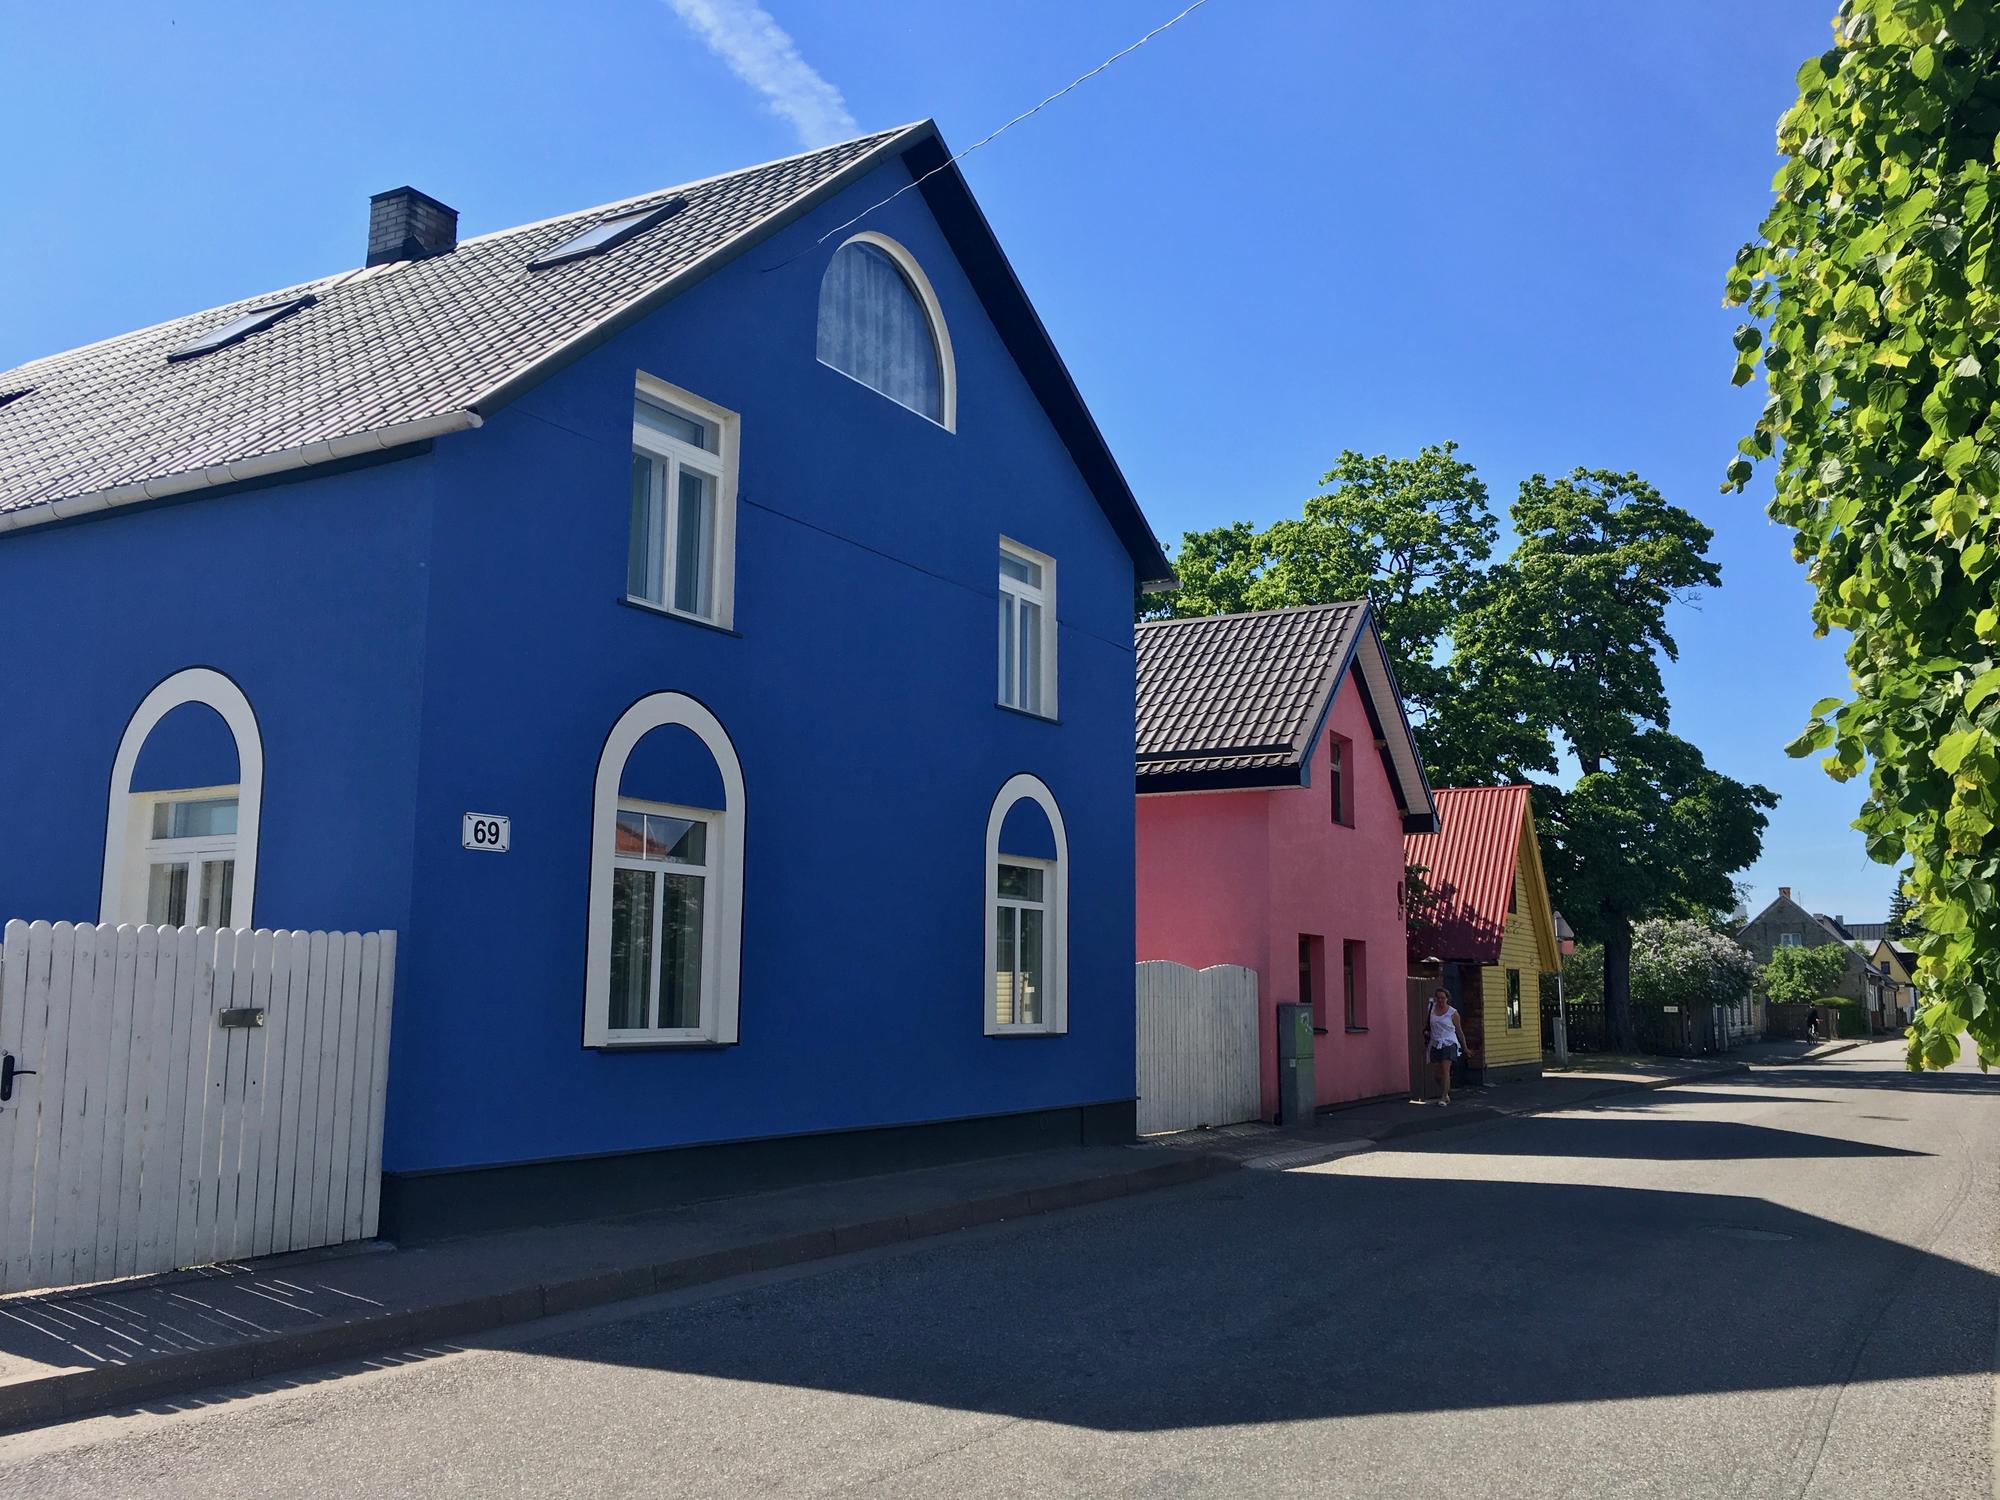 🇪🇪 Pärnu, Estonia, May 2018.